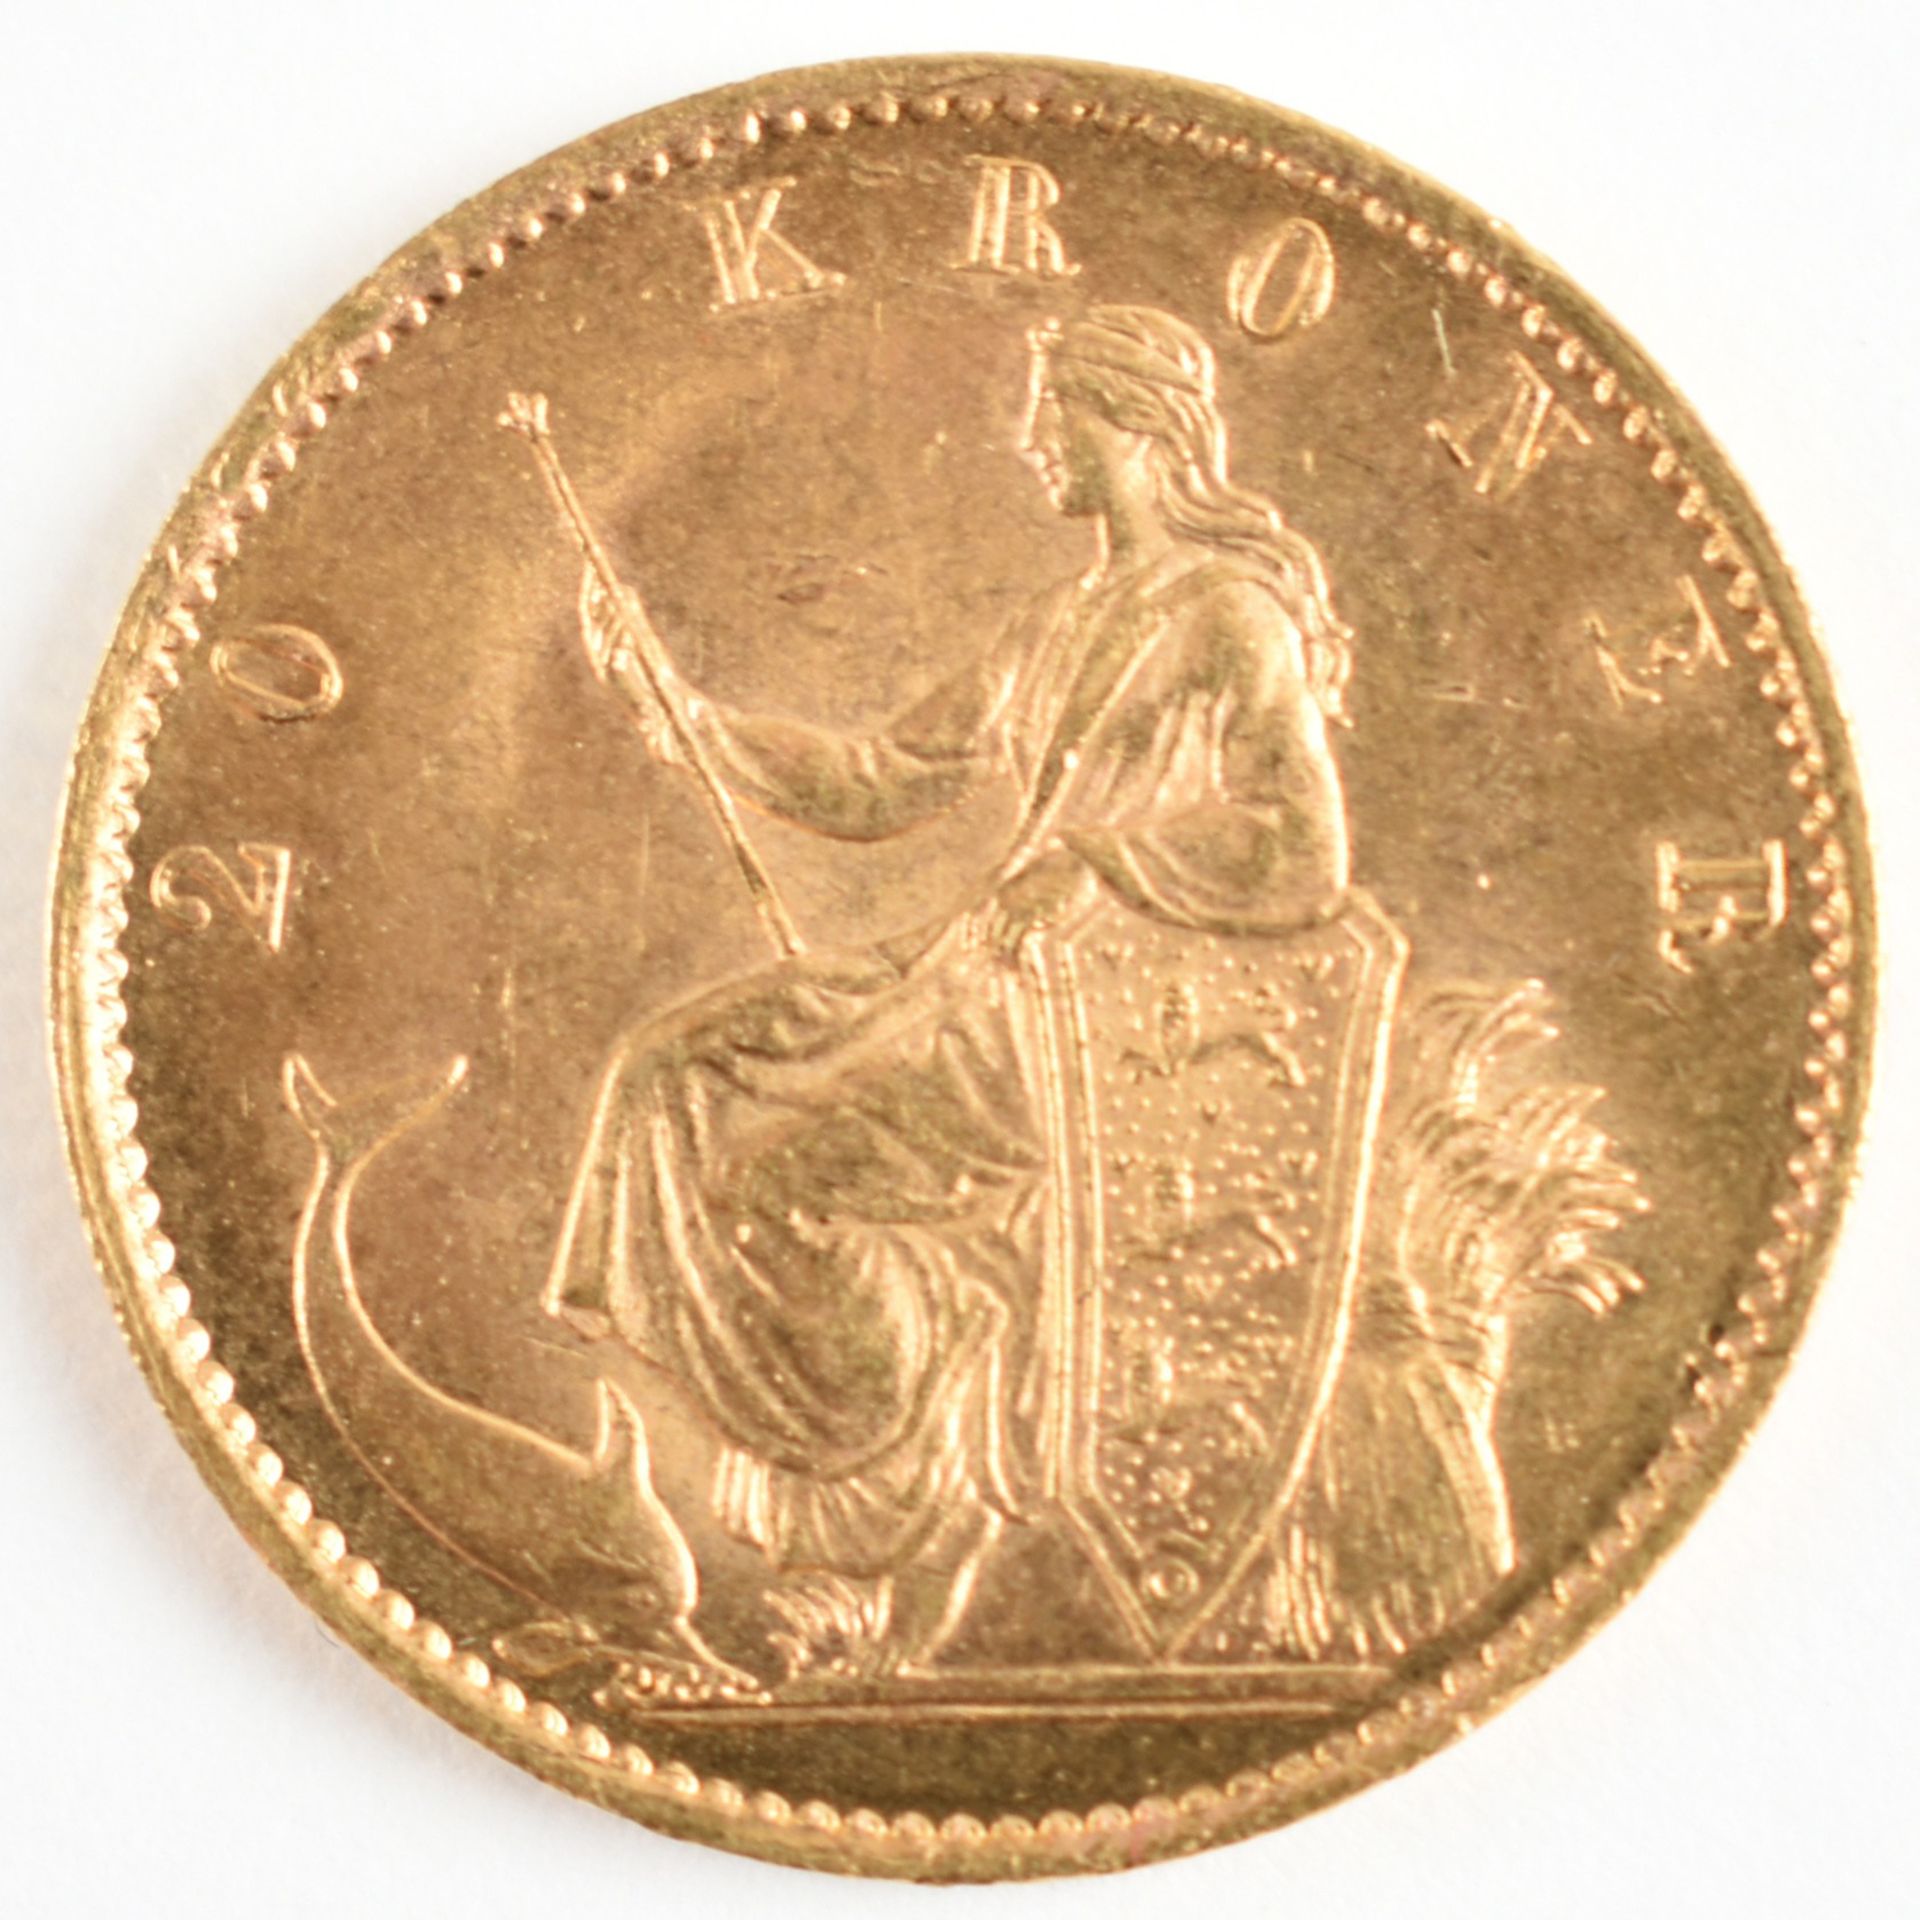 Goldmünze Dänemark 1873 20 Kroner in Gold, 900/1000, 8,96 g, av. Christian IX. König von Dänemark, - Bild 2 aus 3